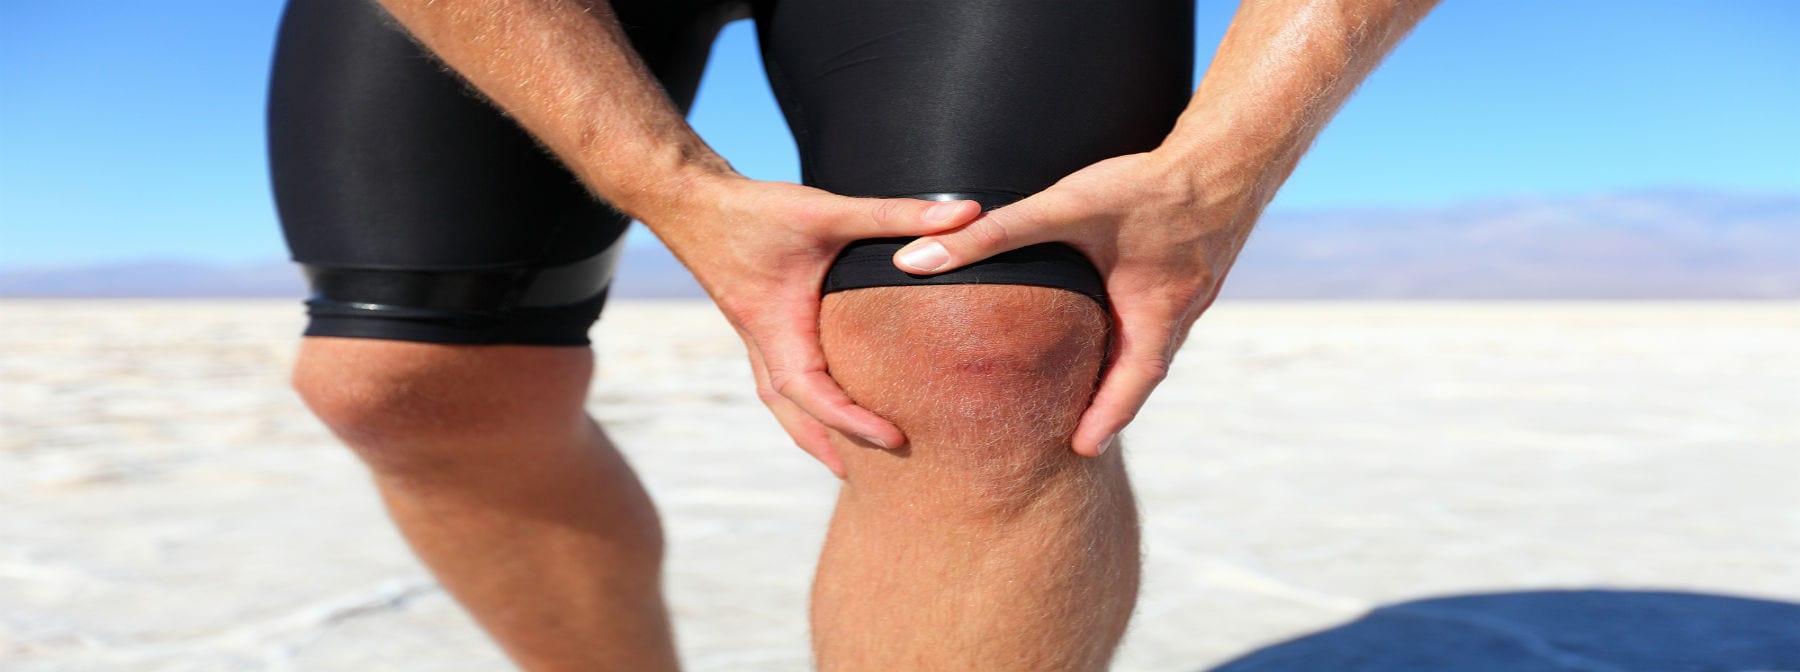 Упражнения для восстановления коленного сустава